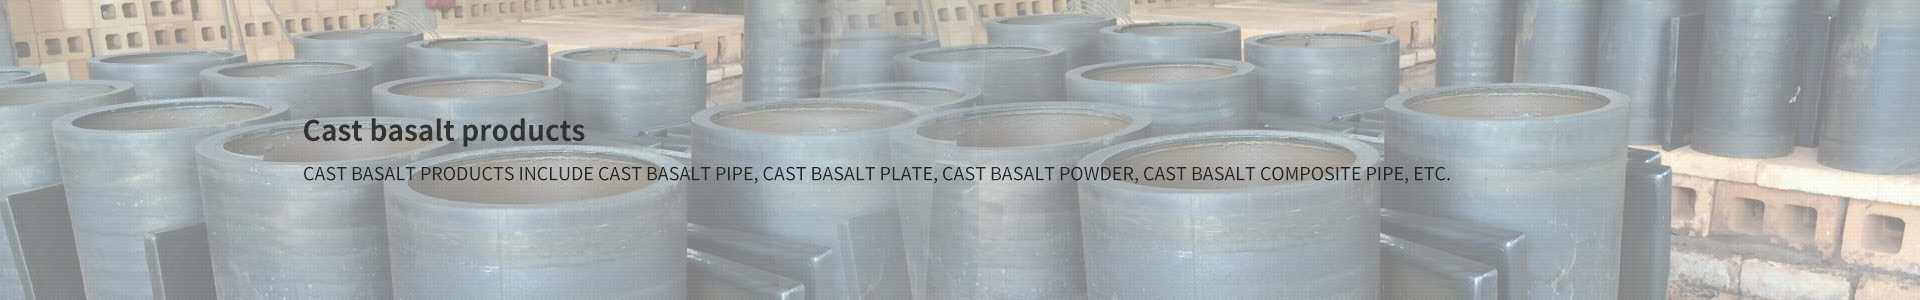 cast basalt products